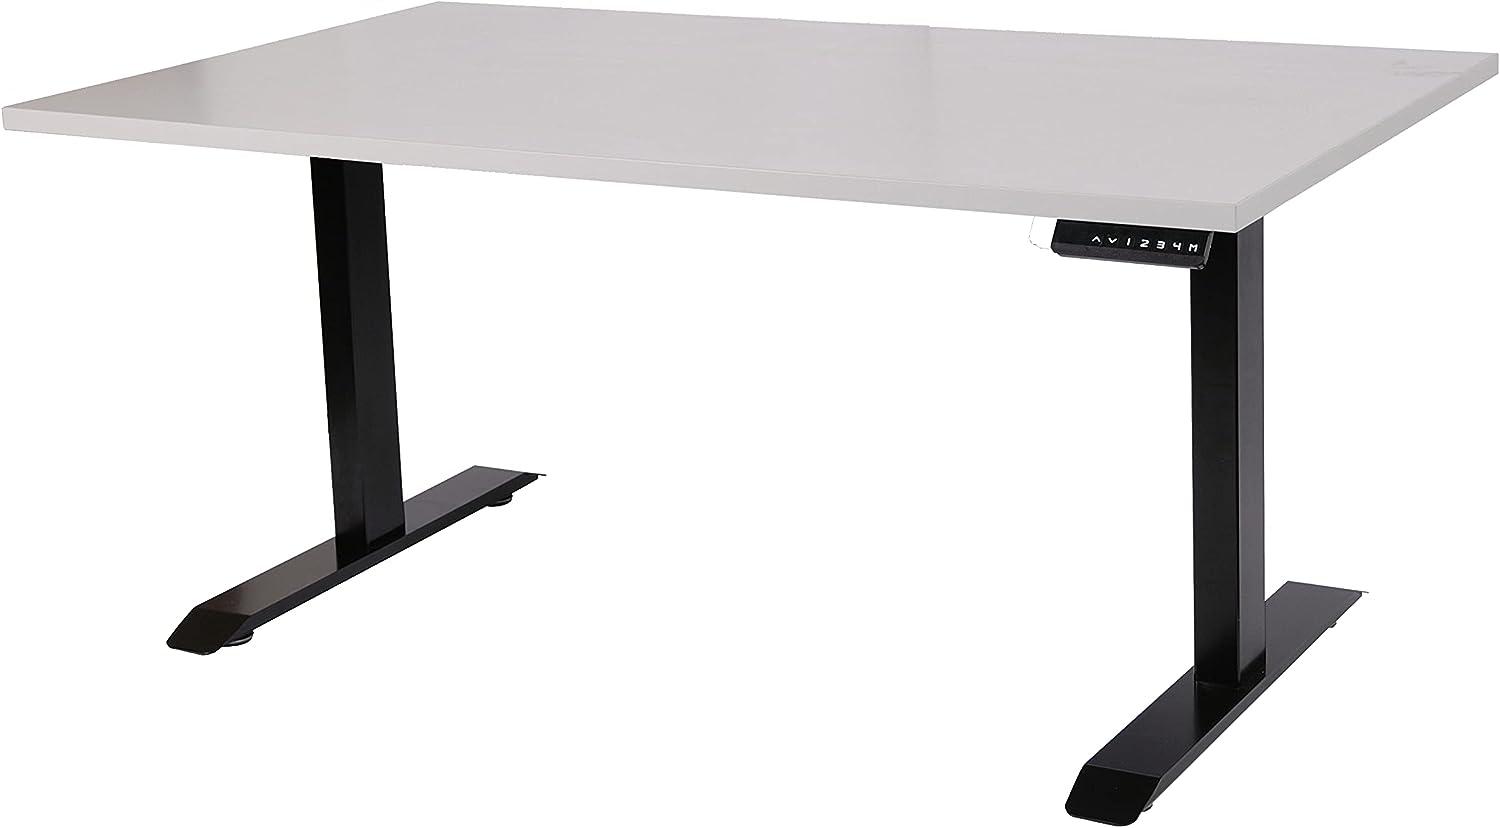 Szagato Schreibtisch stufenlos elektrisch höhenverstellbar BxTxH: 160x80x(64,5-129,5) cm schwarz, mit Memory-Funktion inkl. Tischplatte Stärke 2,5 cm (Stischgestell, Steh-Sitz Tisch) Bild 1